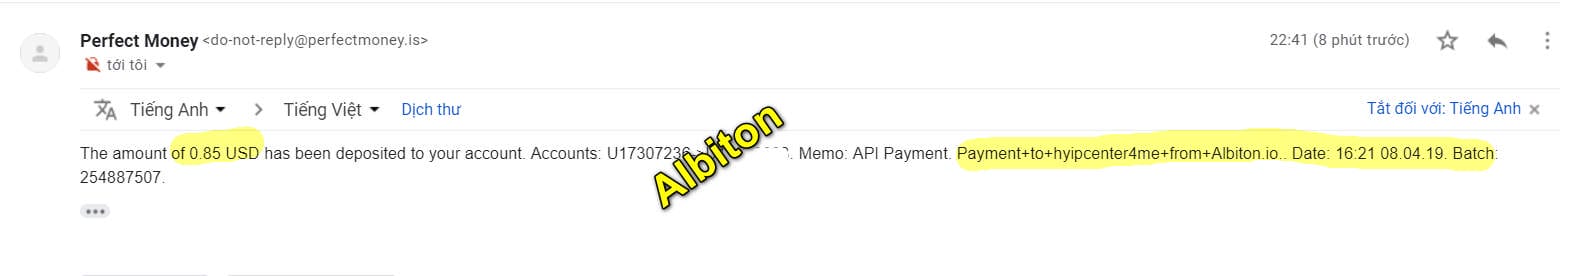 aibiton 0804 - [SCAM] Review Albiton - Lợi nhuận 4% hàng ngày trong 40 ngày, lãi trả theo giờ. Thanh toán tức thì